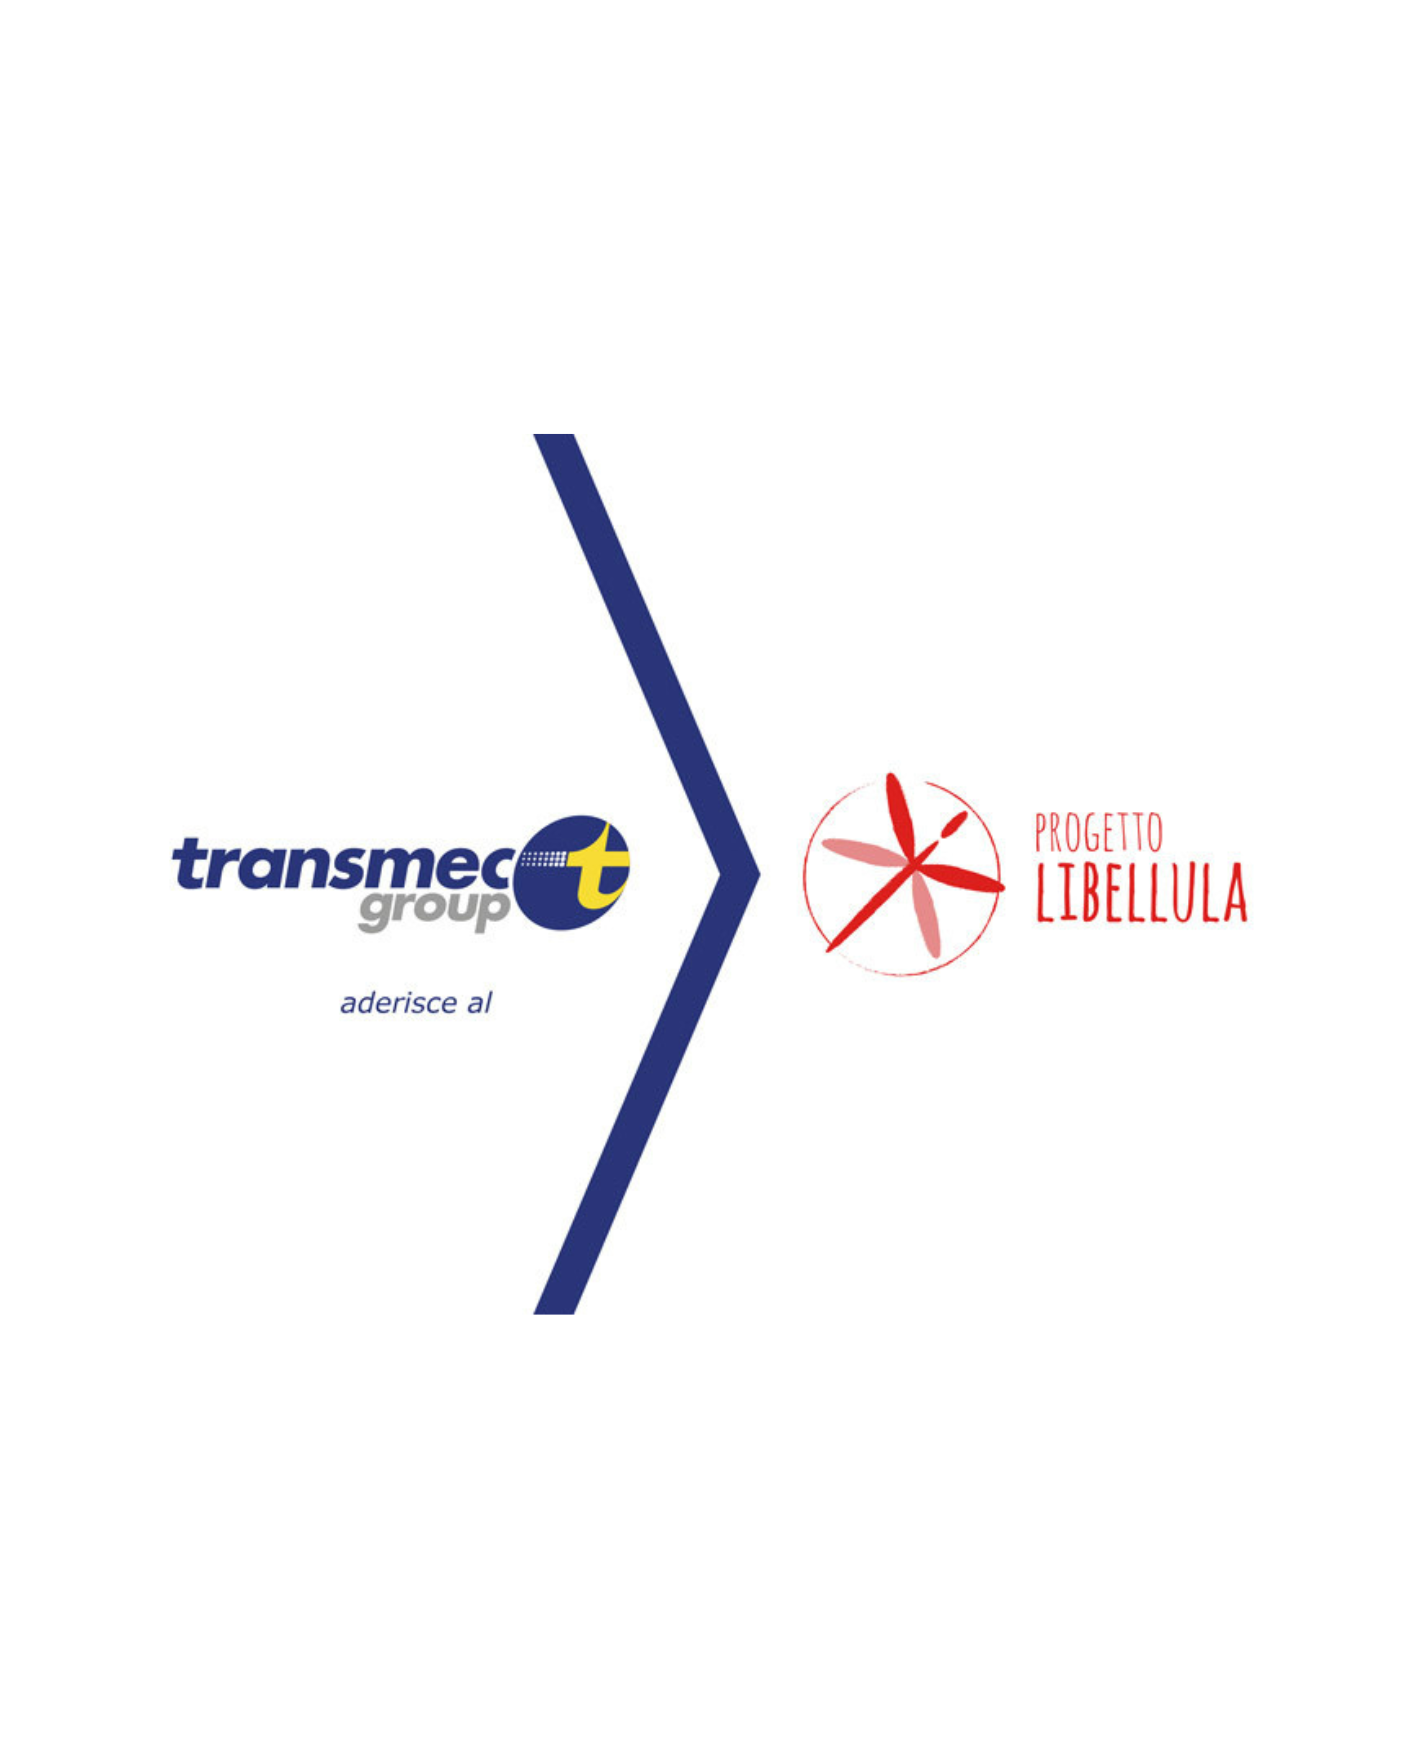 Transmec aderisce al Progetto Libellula - Transmec Group